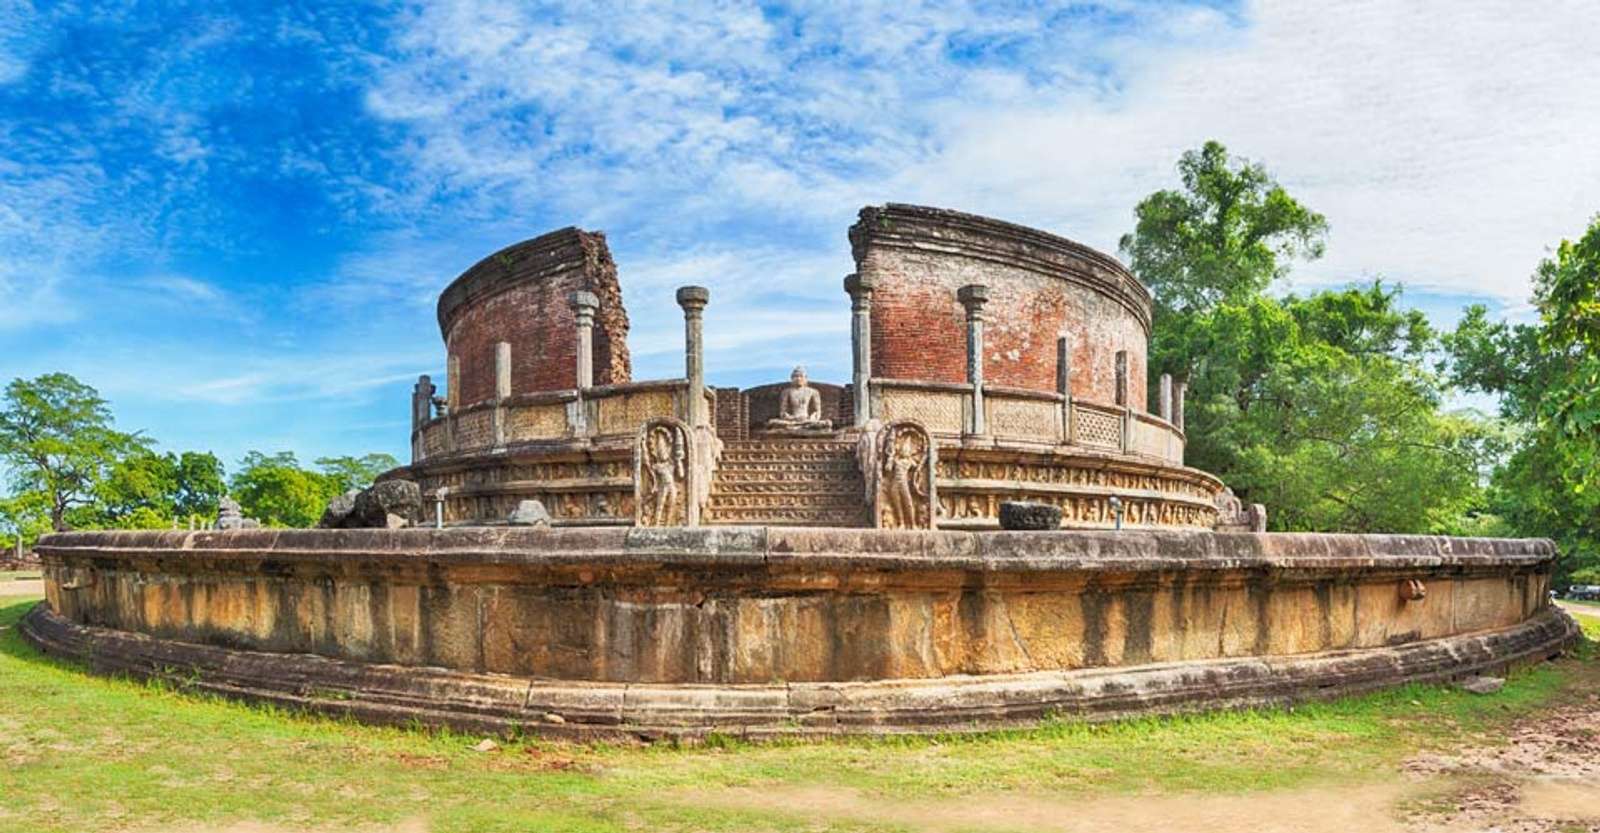 Polonnaruwa Vatadage, Polonnaruwa, Sri Lanka.